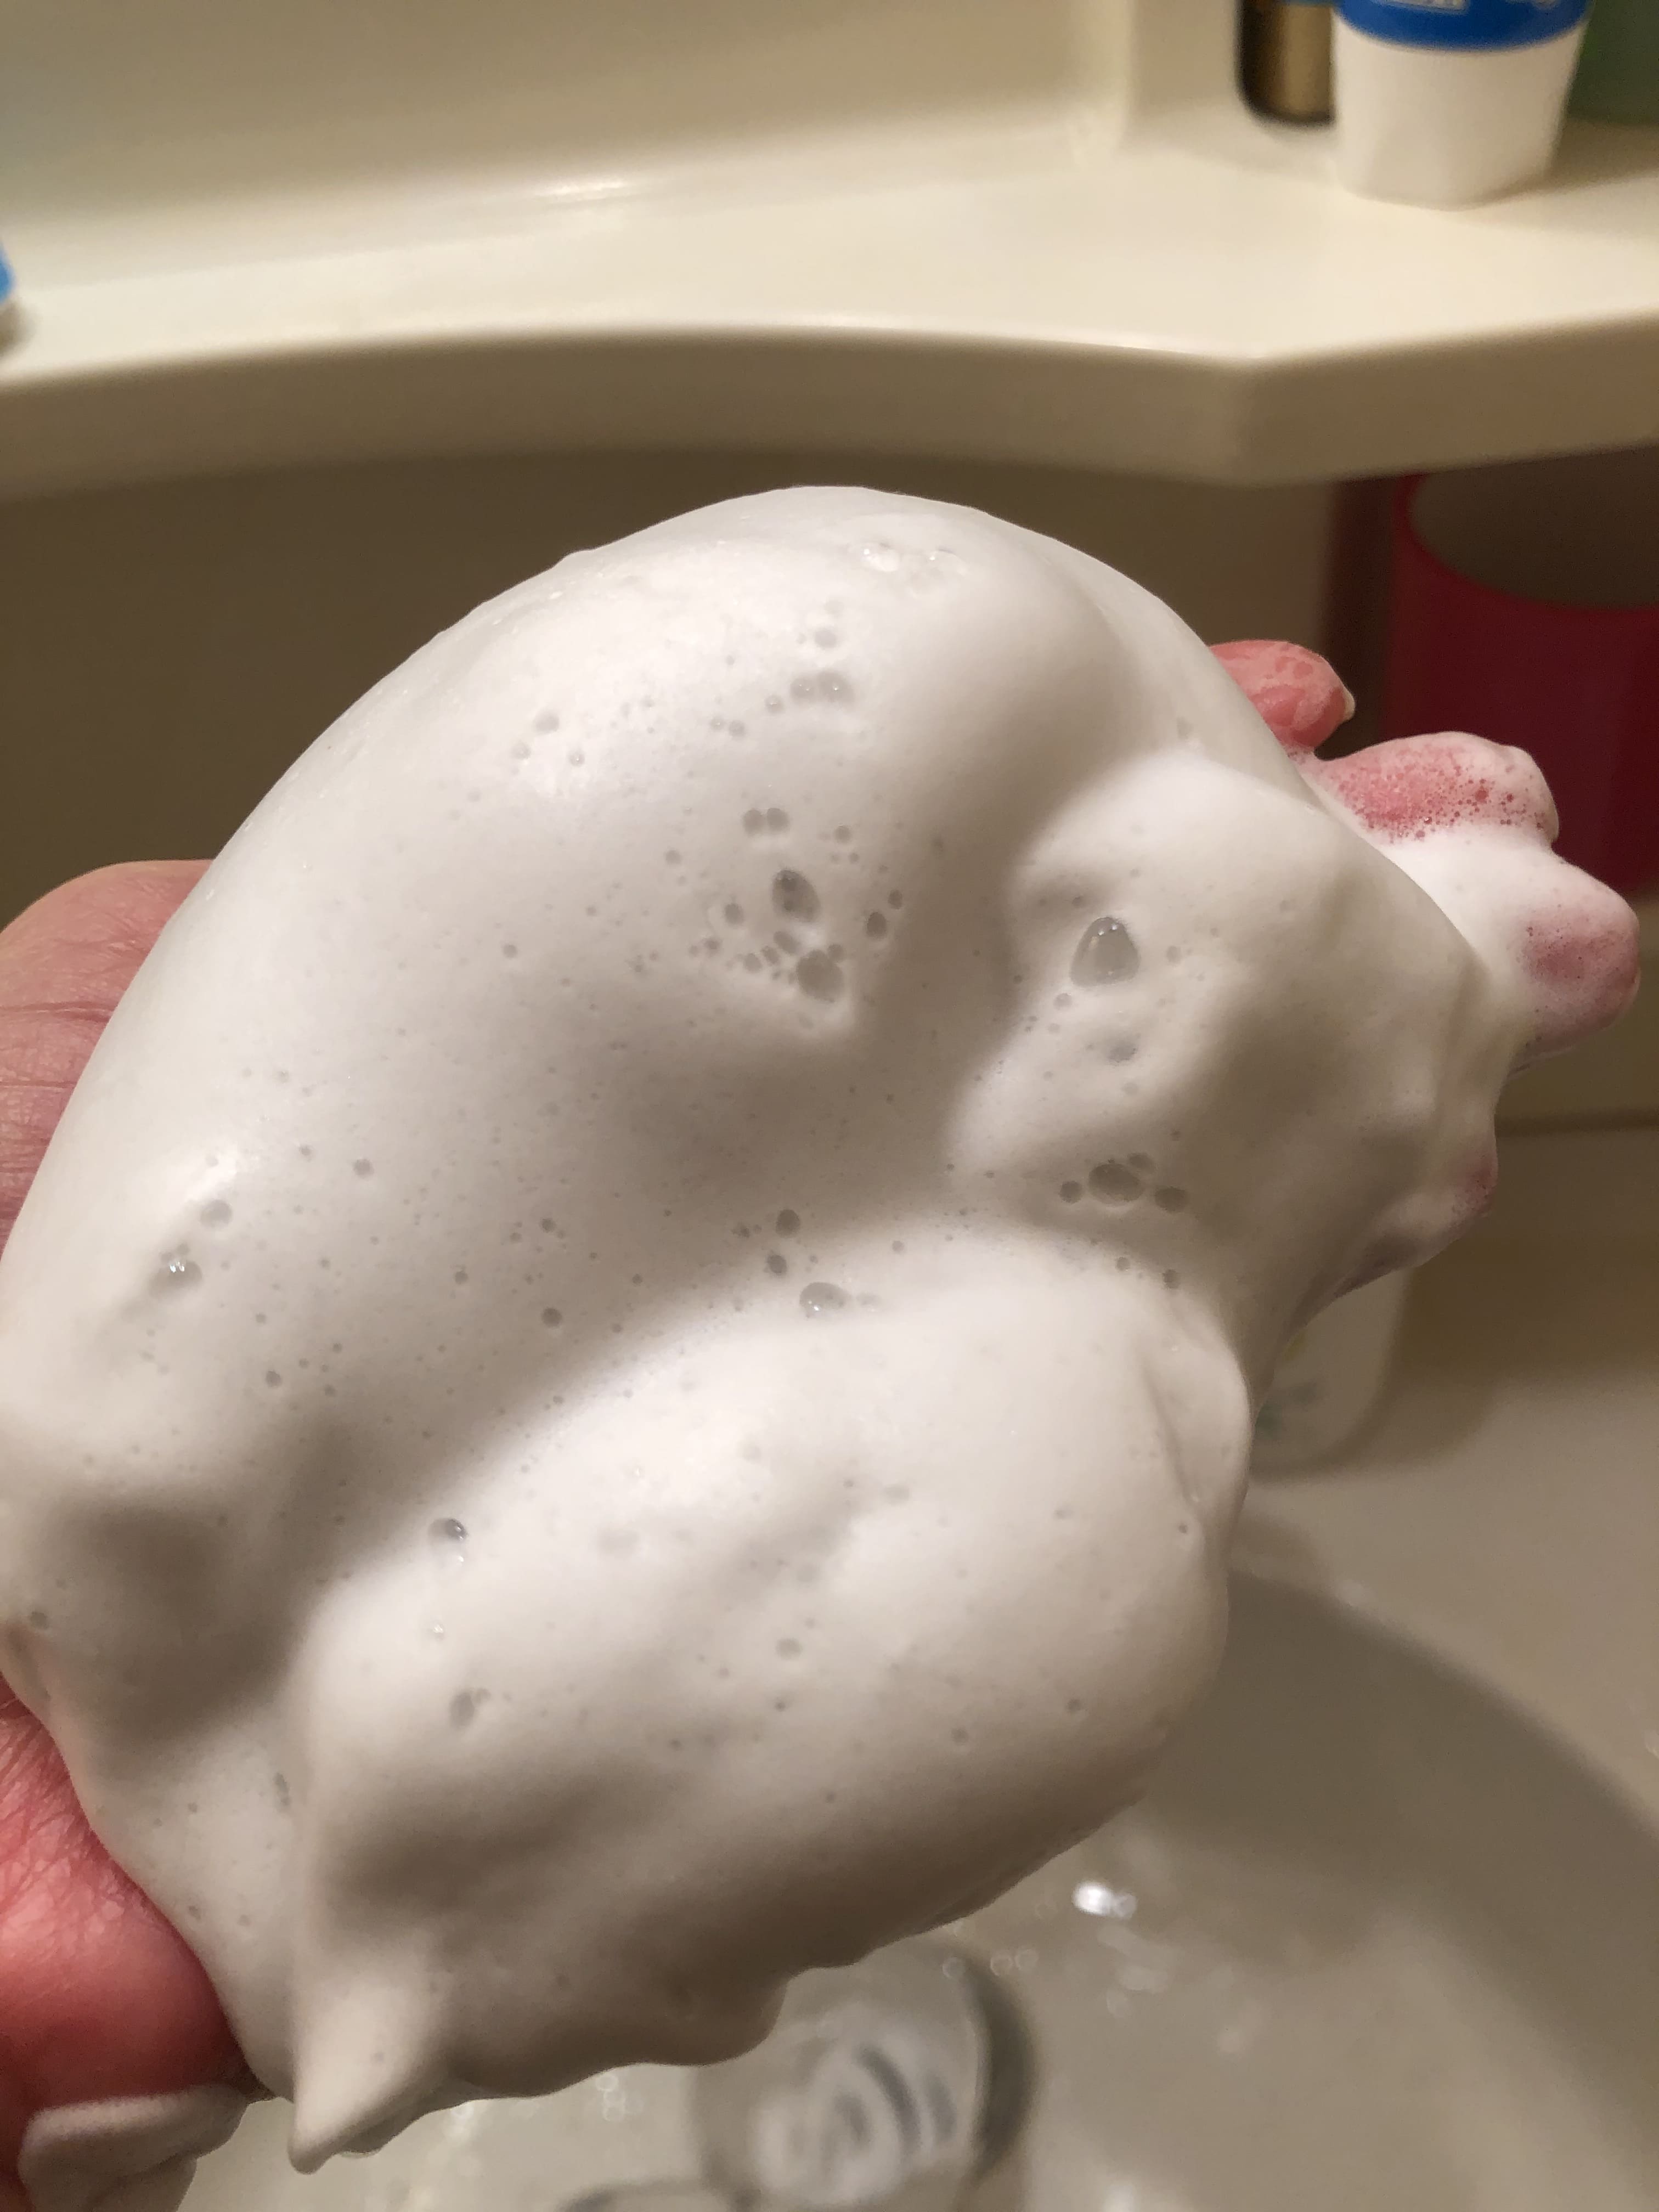 熊野油脂ファーマアクト炭洗顔フォーム